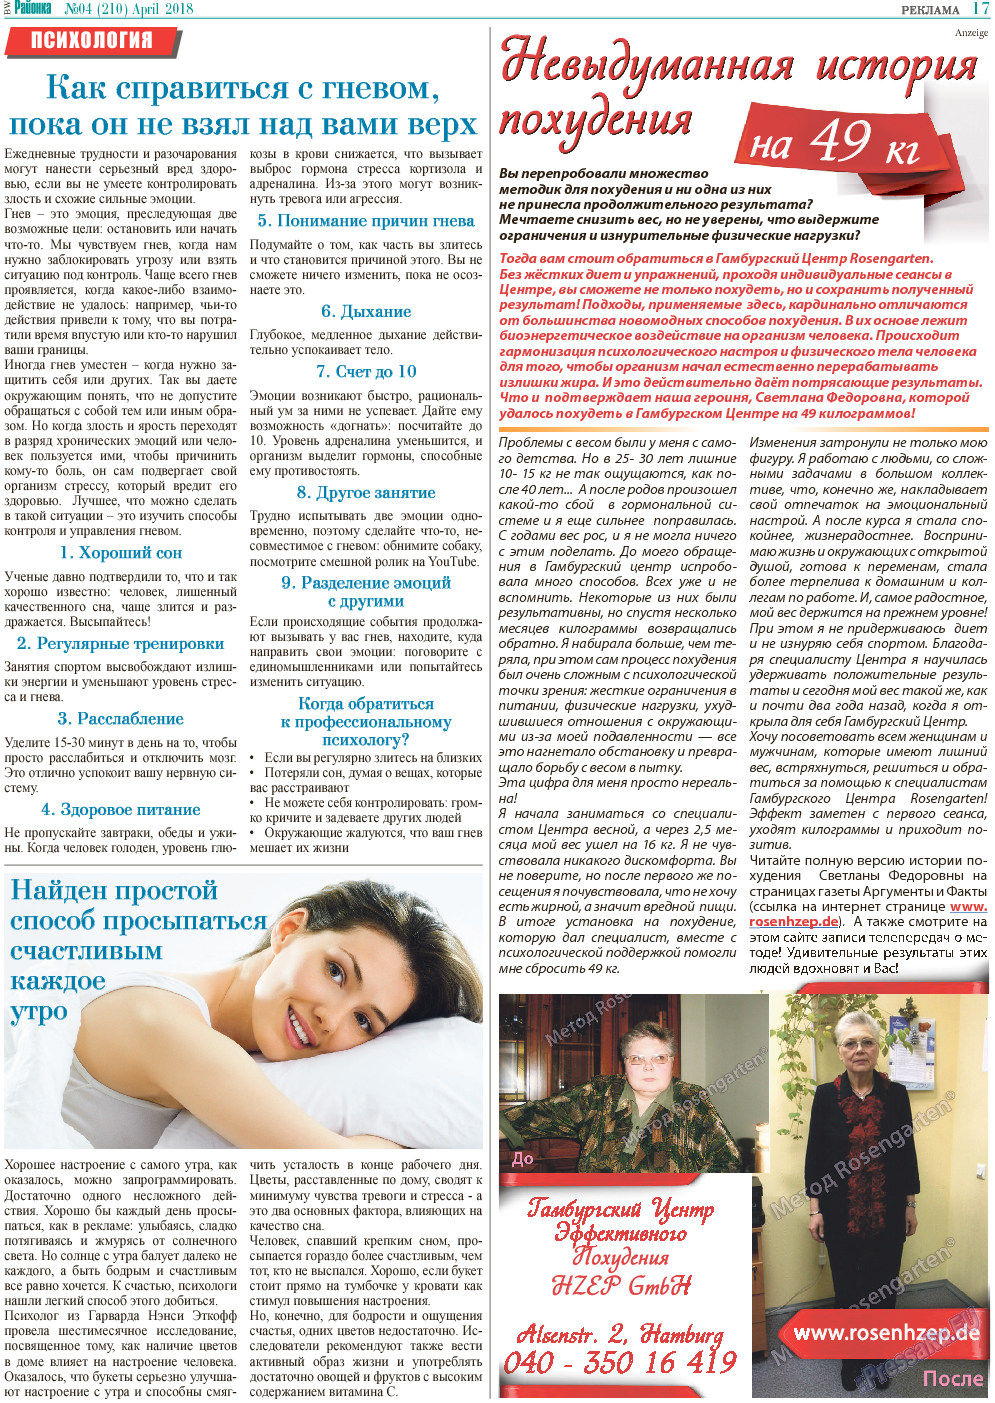 Районка-Süd-West, газета. 2018 №4 стр.17